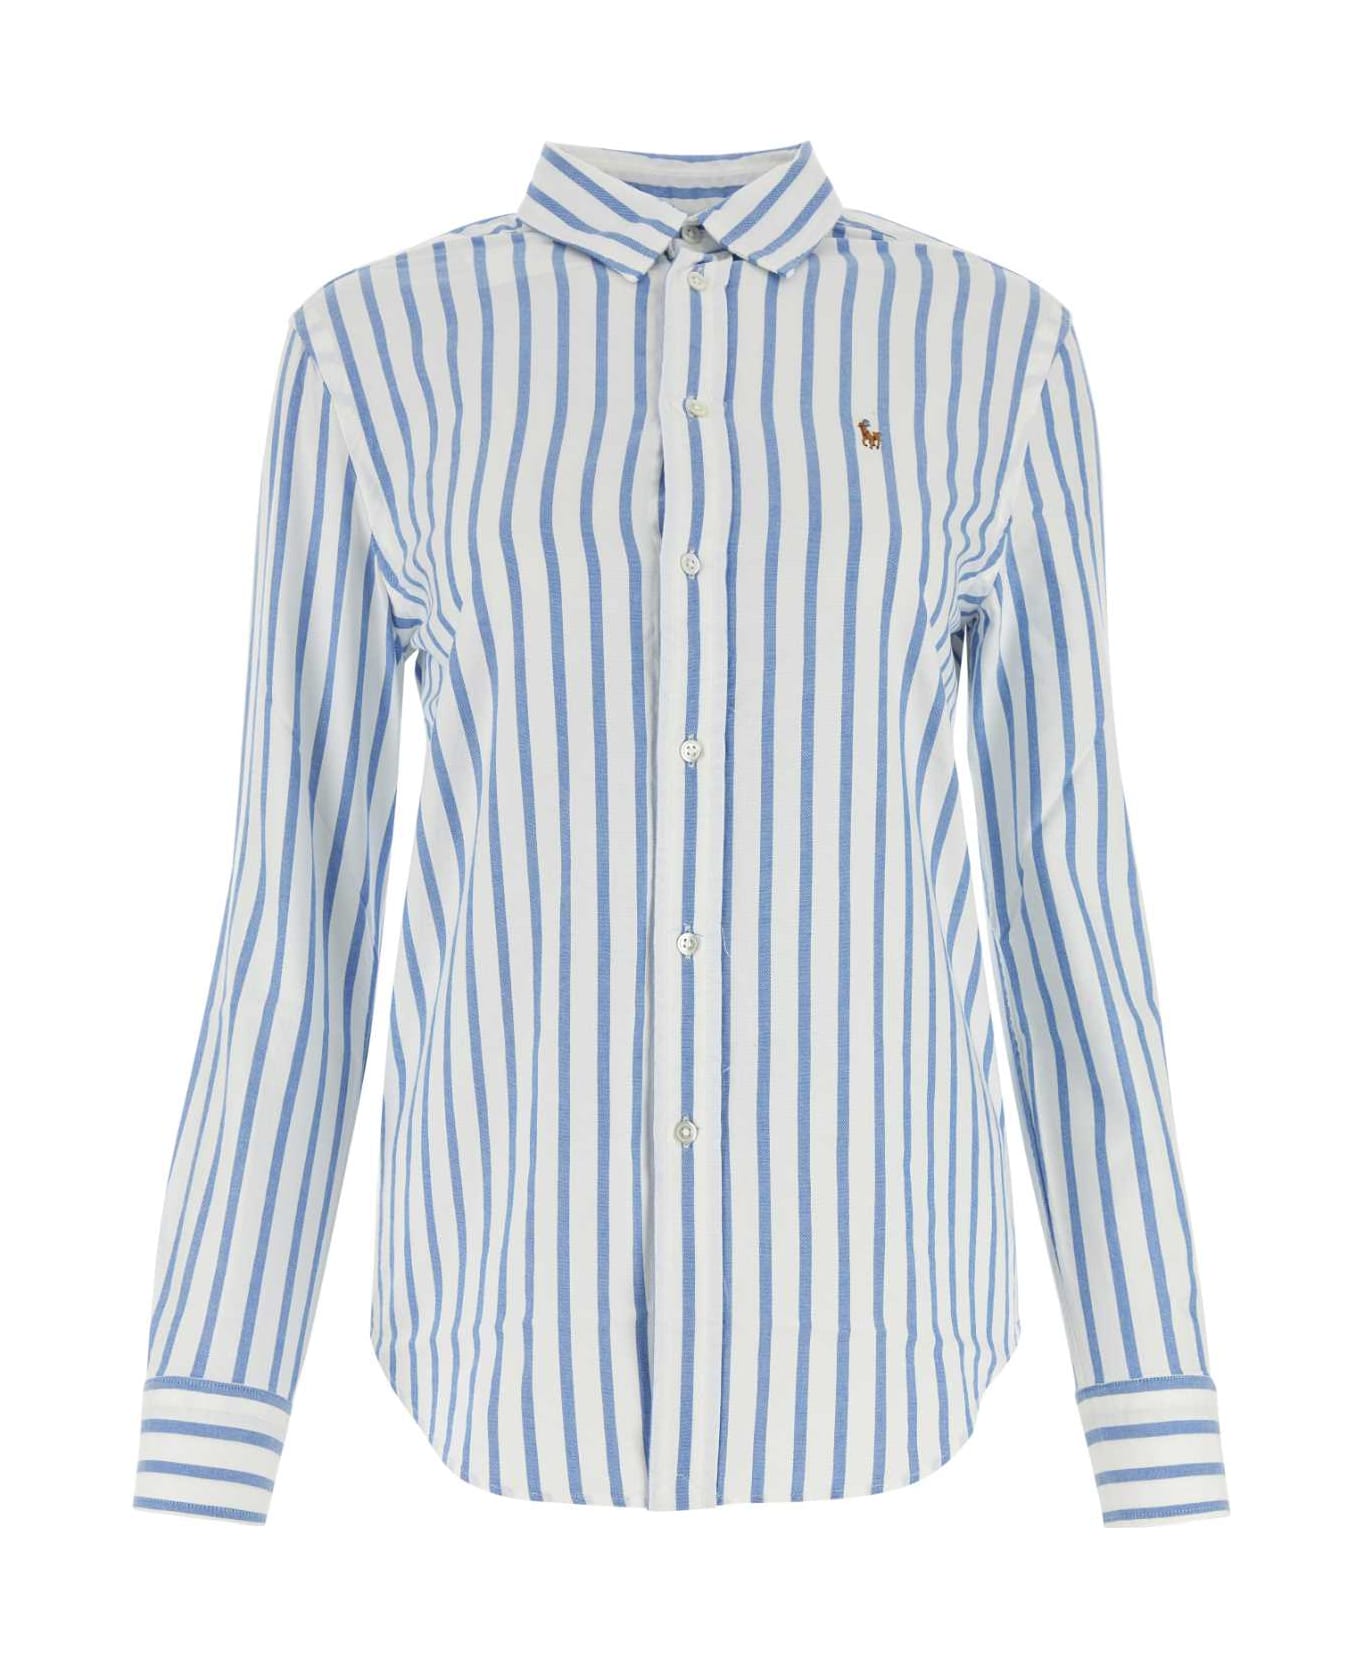 Polo Ralph Lauren Embroidered Oxford Shirt - 1693BWHITELAKEBLUESTRIPE